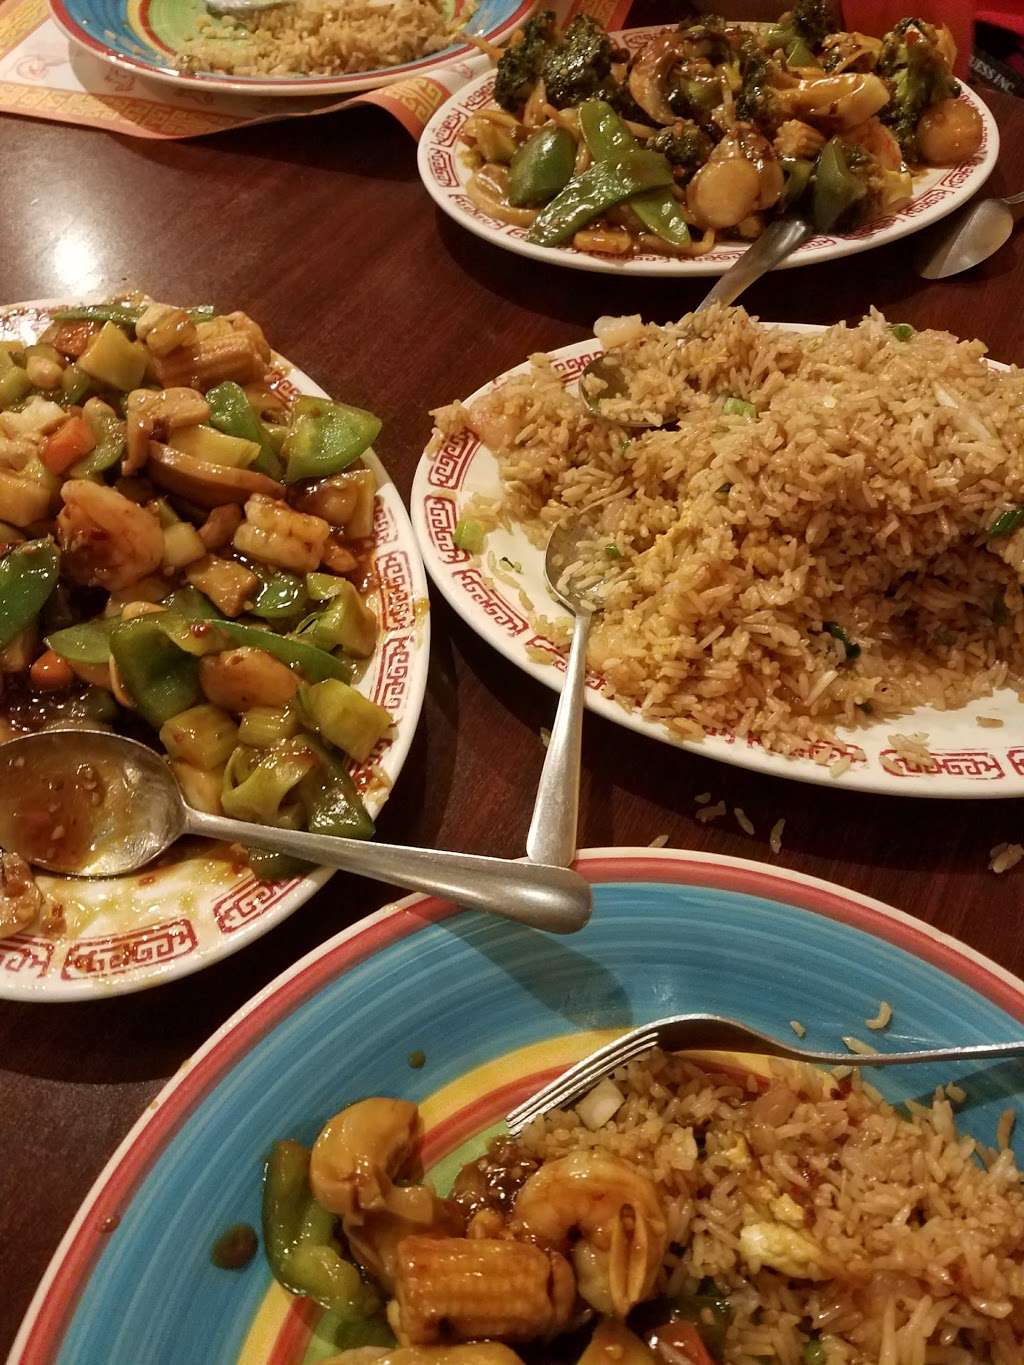 China Ho Restaurant | 5151 S Pulaski Rd, Chicago, IL 60632 | Phone: (773) 284-1881